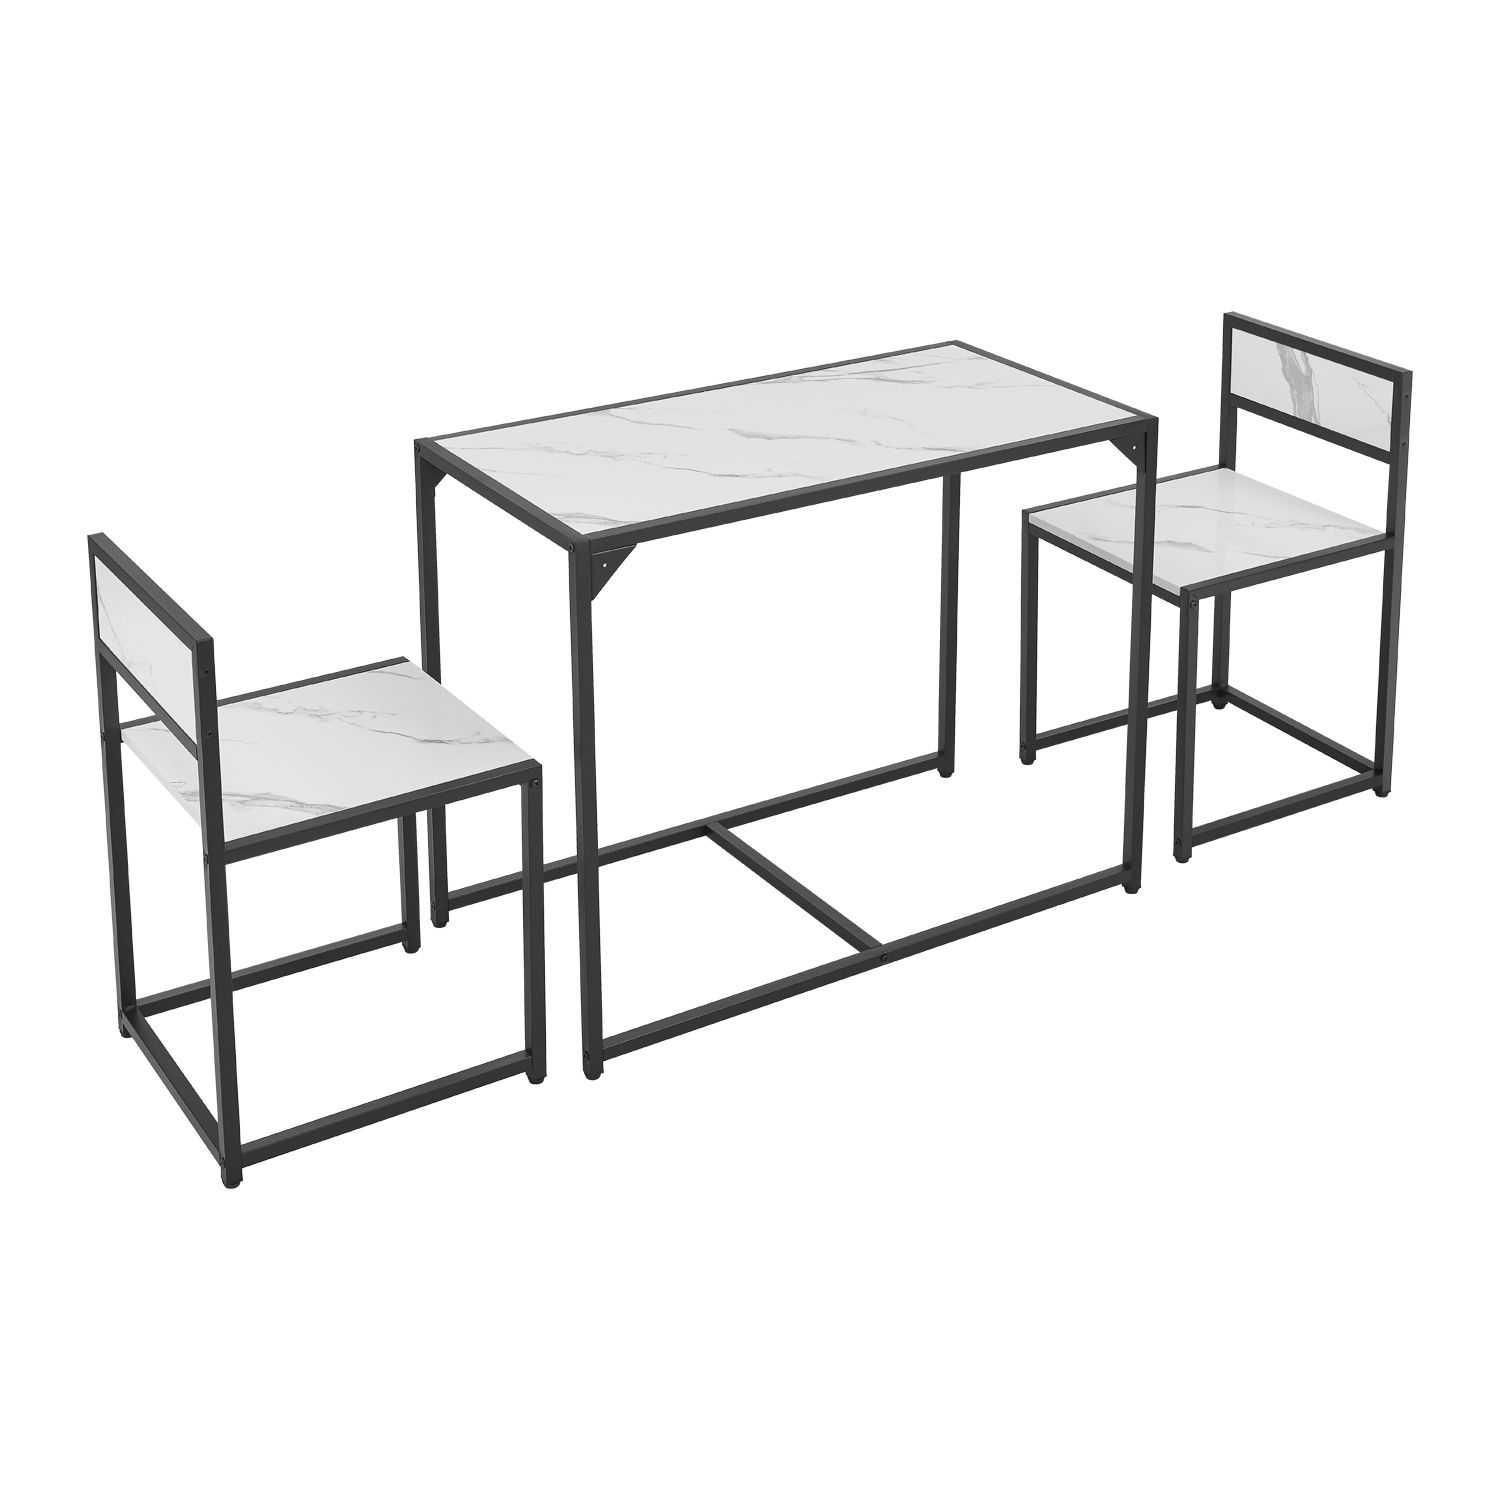 E-shop Juskys Súprava kuchynského stola so stolom a 2 stoličkami - mramorový vzhľad